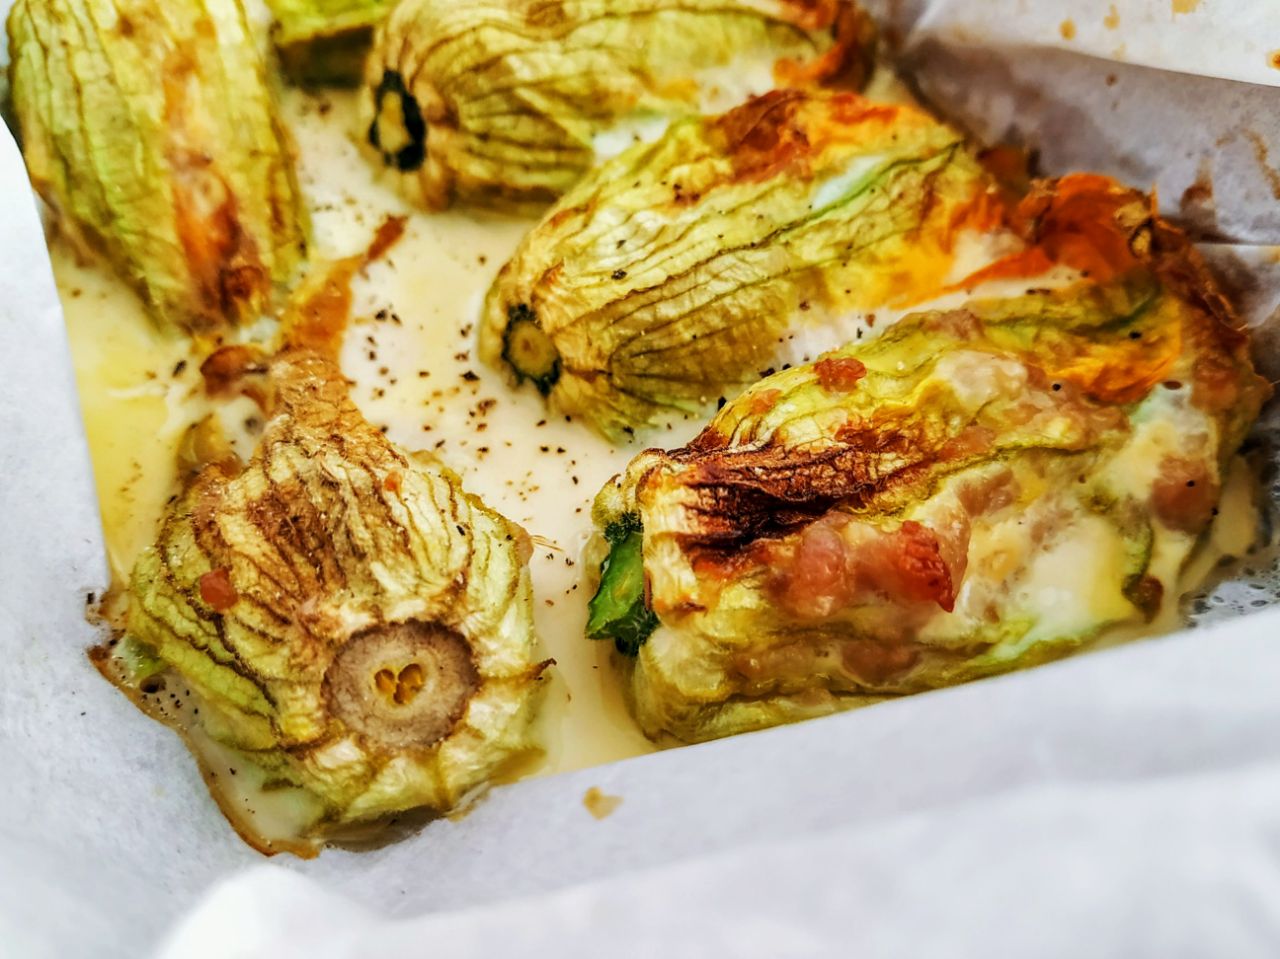 Antipasti economici senza burro e senza formaggio: fiori di zucchina al forno ripieni con salsiccia di pollo e tacchino e basilico!